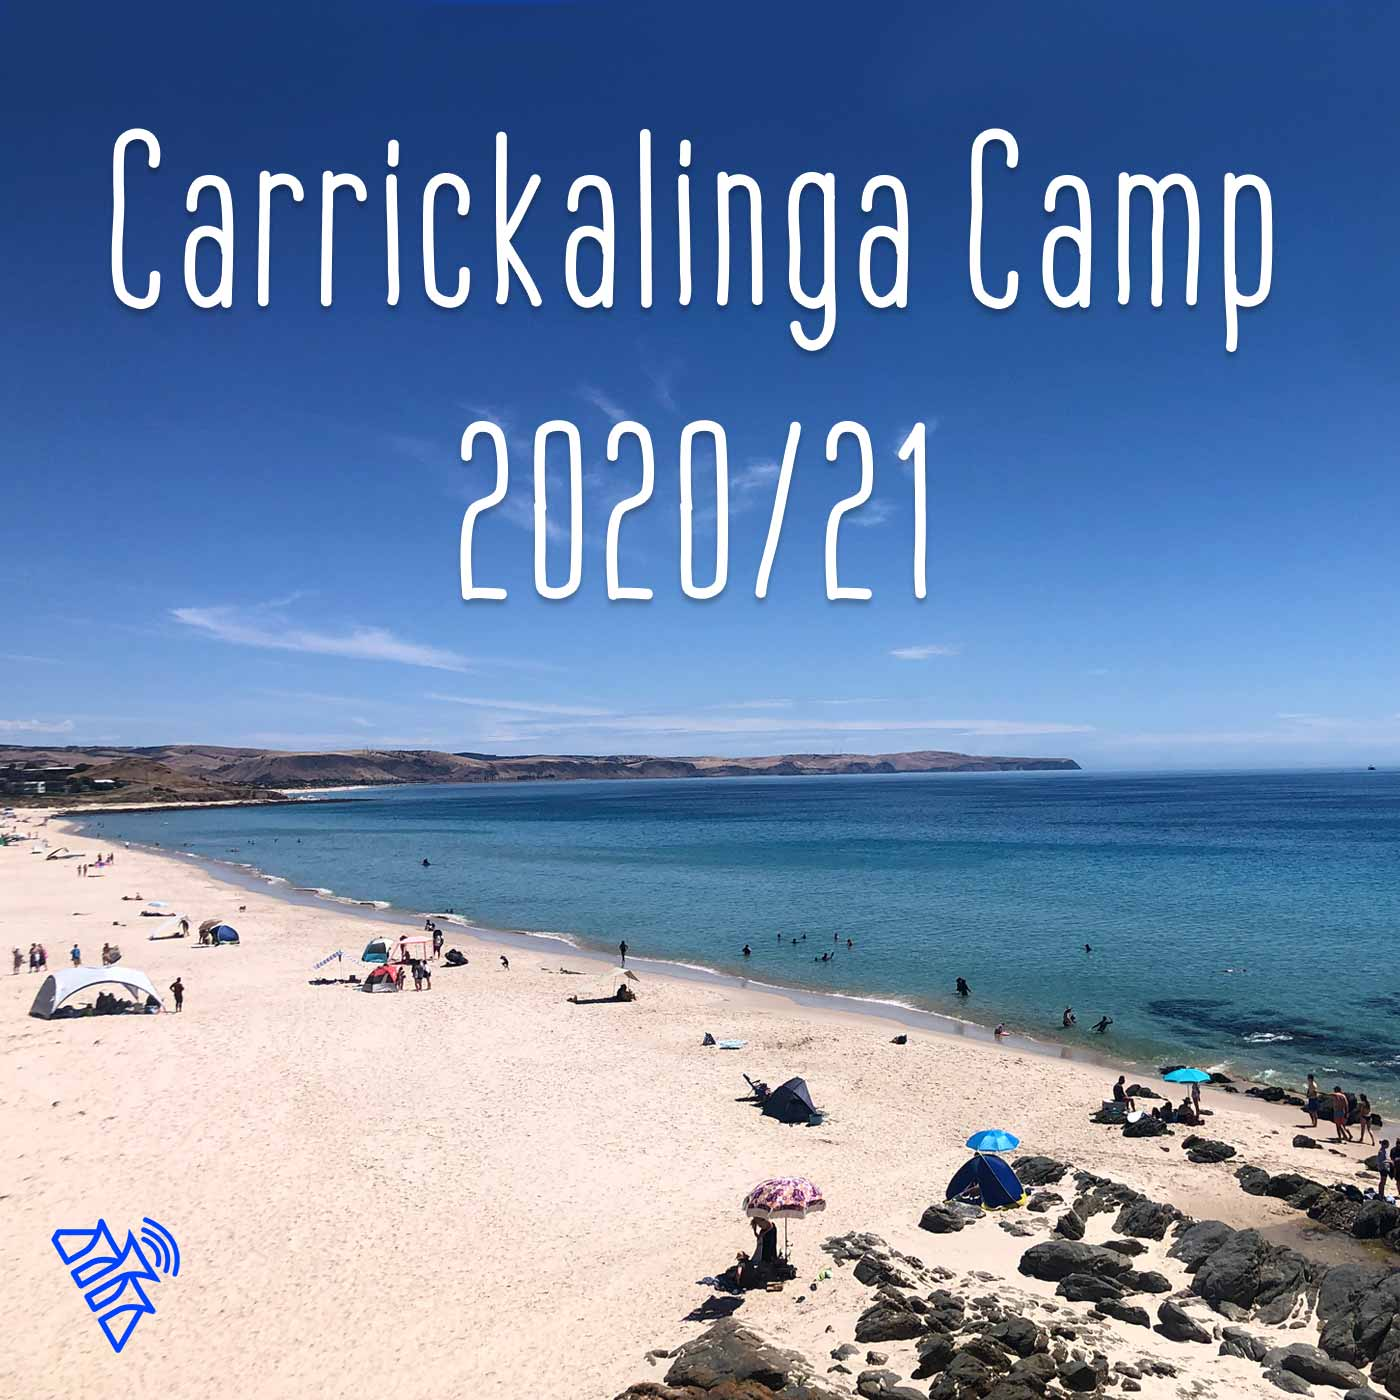 The Power within (Carrickalinga Camp Dec 2020)